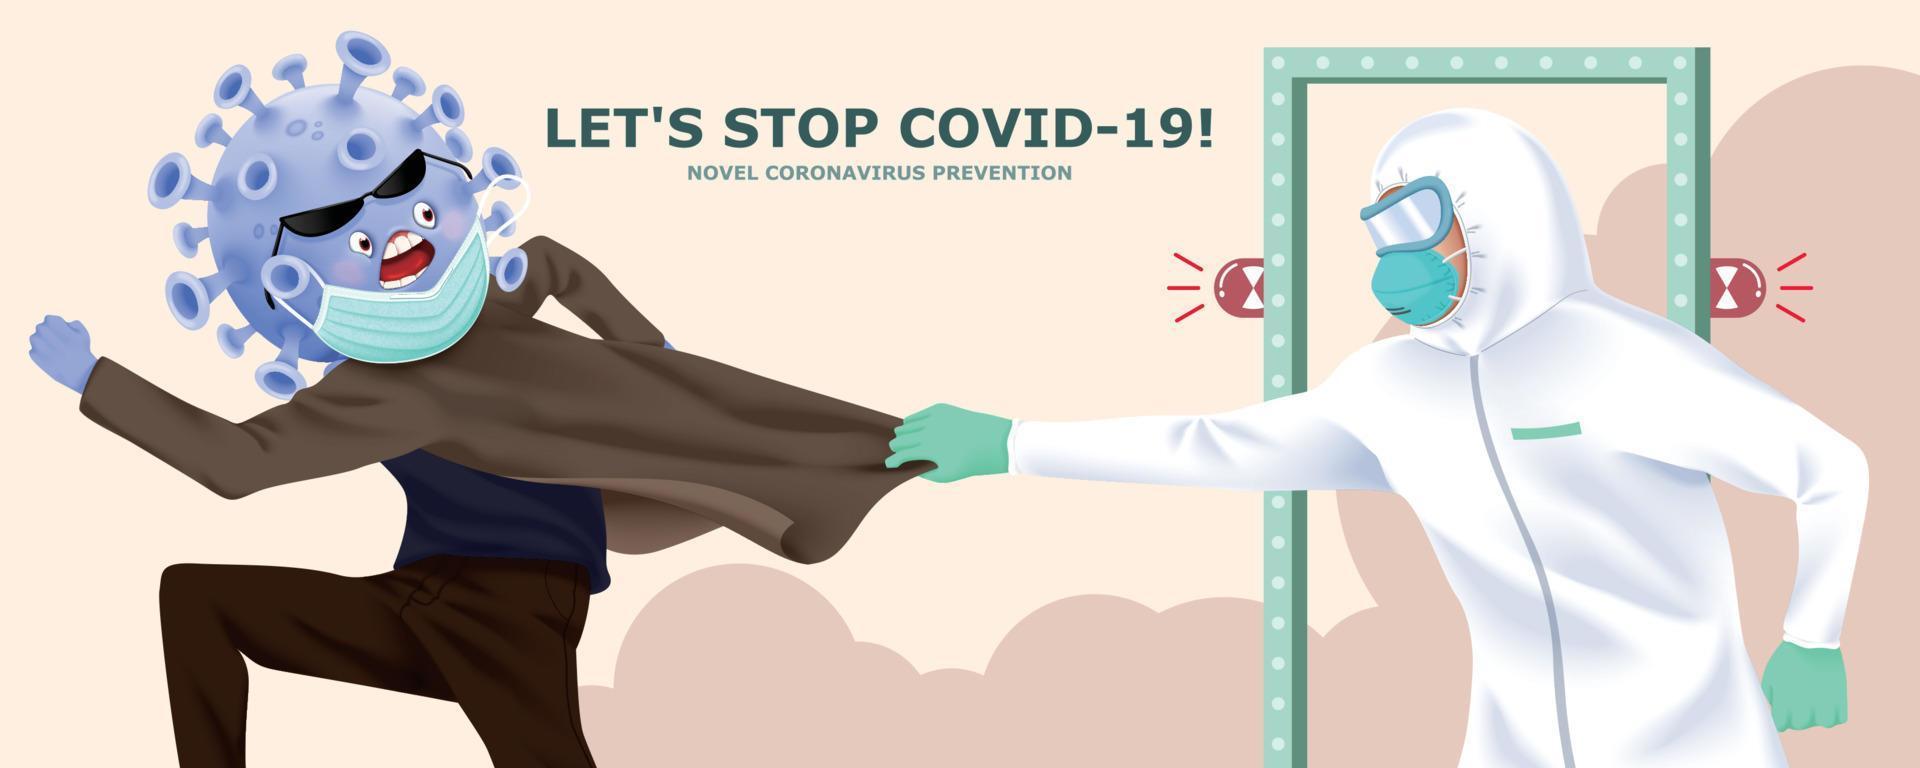 coronavirus vermommen zelf met gezicht masker geprobeerd naar voorbij gaan aan de poort maar kreeg gevangen door medisch arbeider in Hazmat pak, concept van detecteren potentieel infectie van covid-19 vector